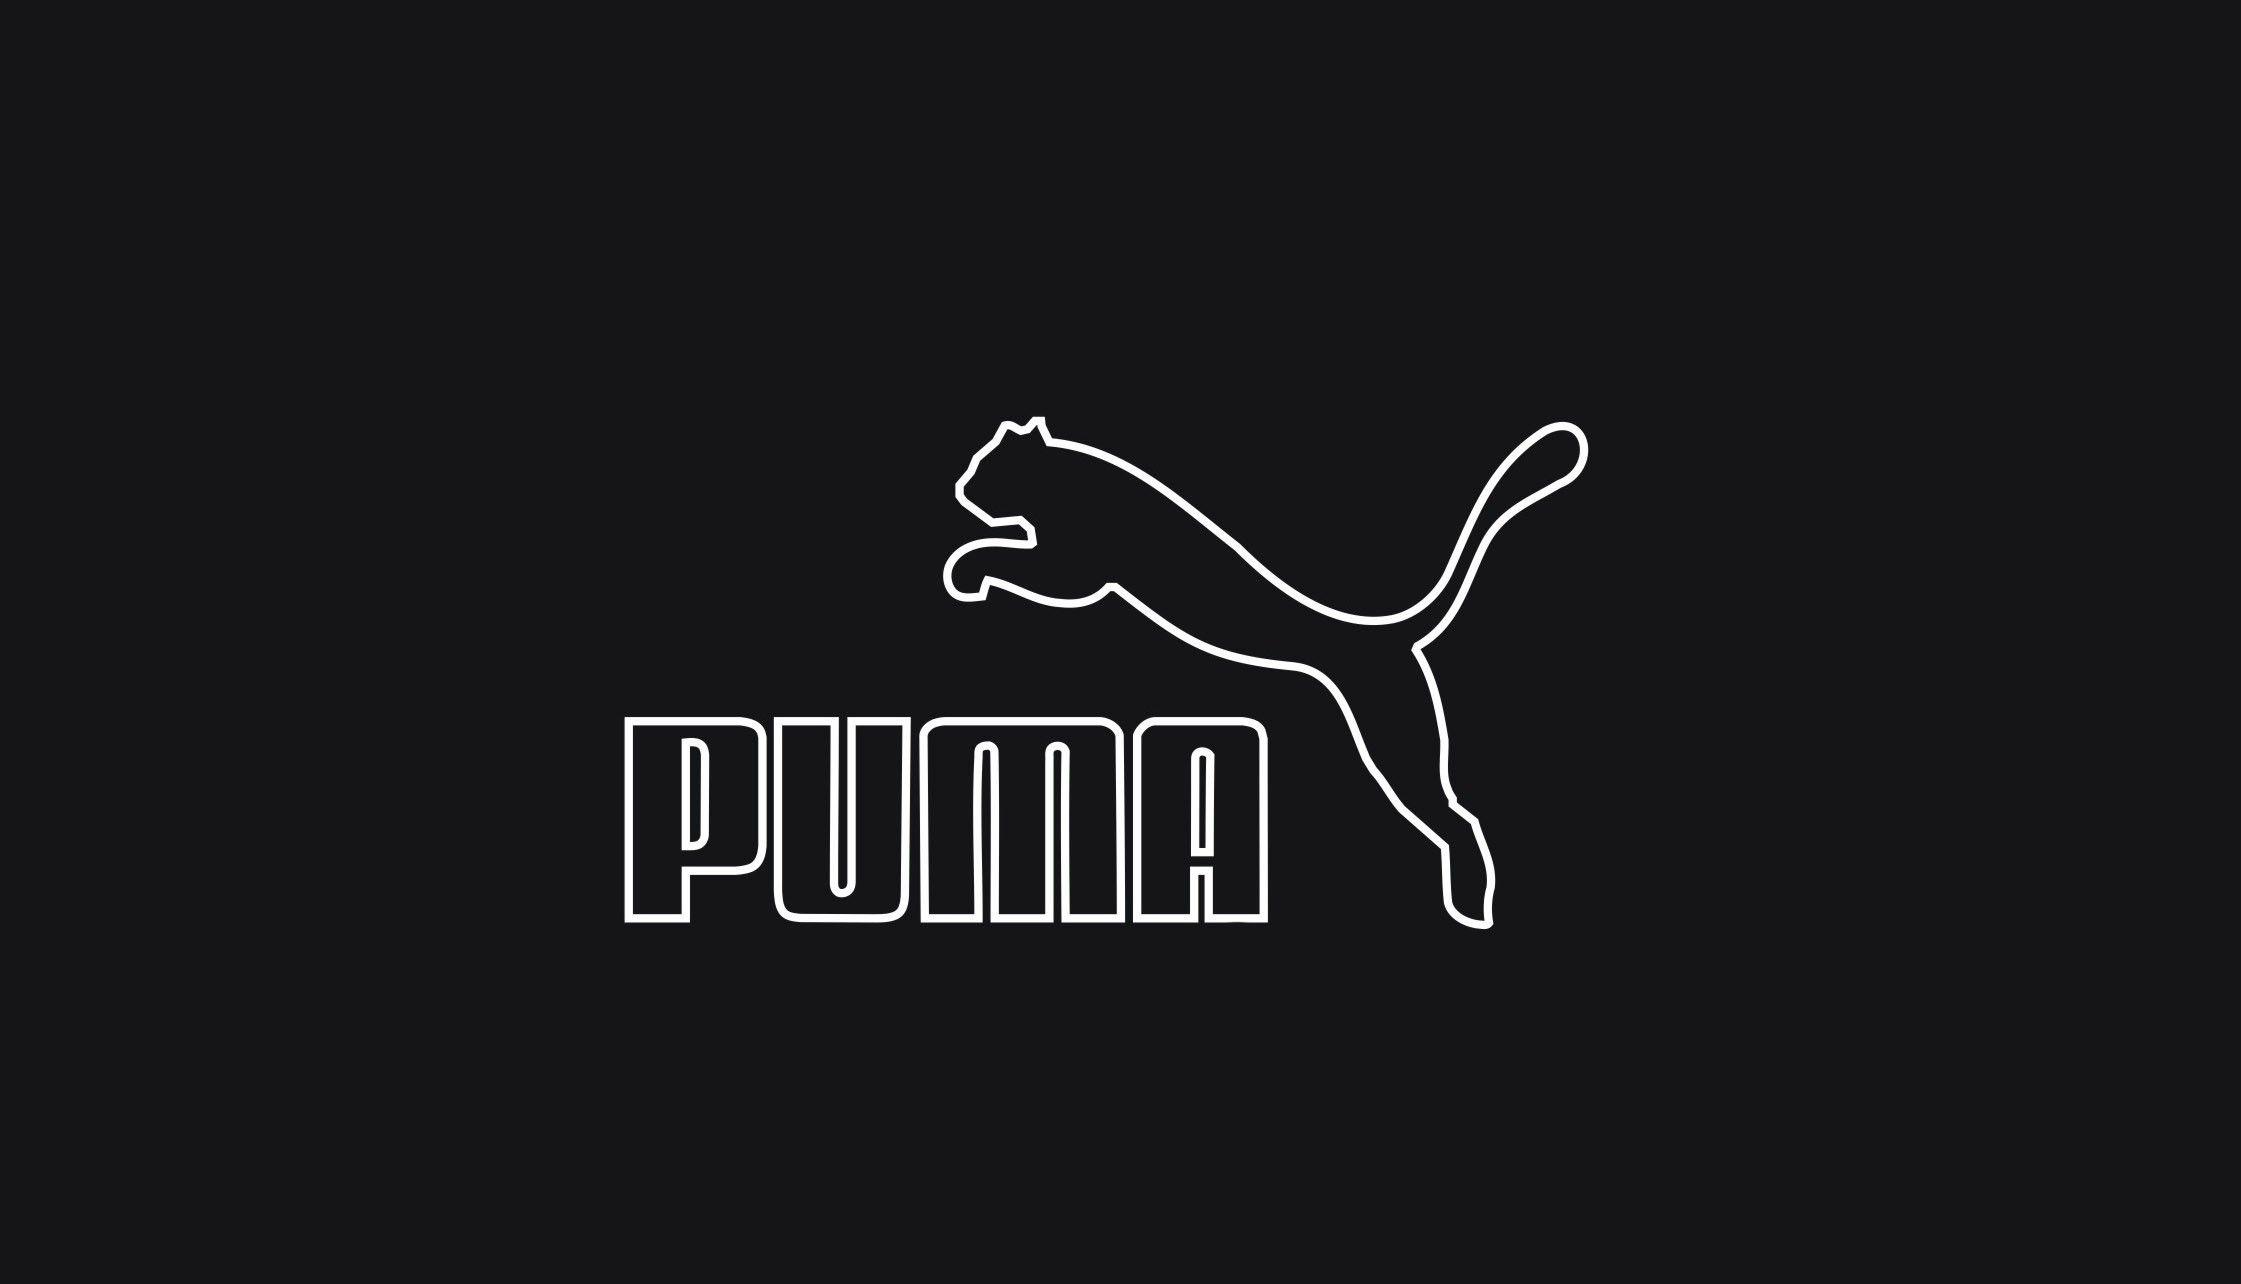 puma logo wallpaper hd